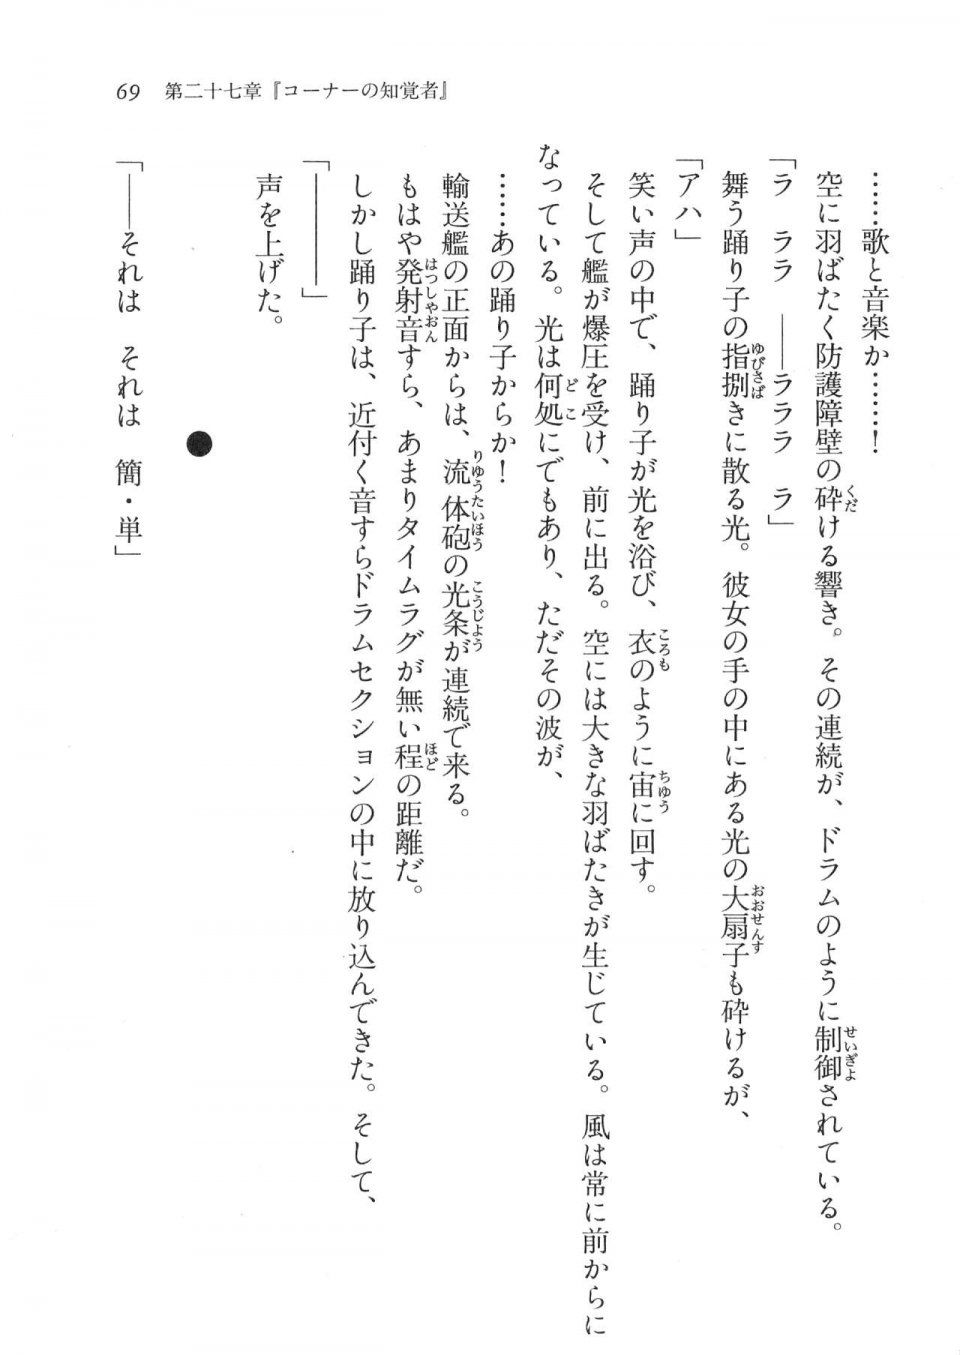 Kyoukai Senjou no Horizon LN Vol 17(7B) - Photo #69